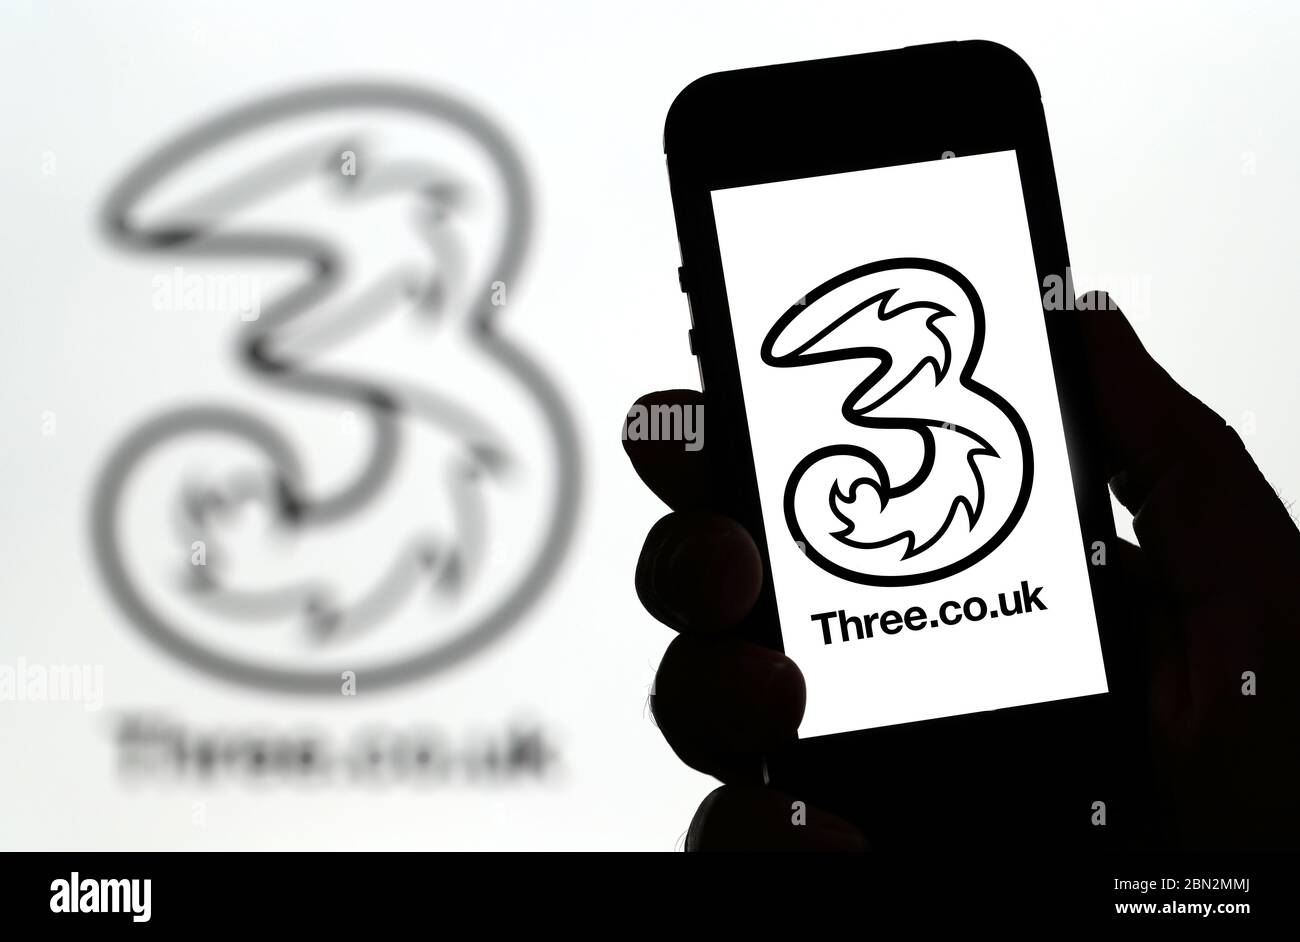 Trois logos de réseau de téléphone mobile sur un téléphone mobile (usage éditorial uniquement) Banque D'Images